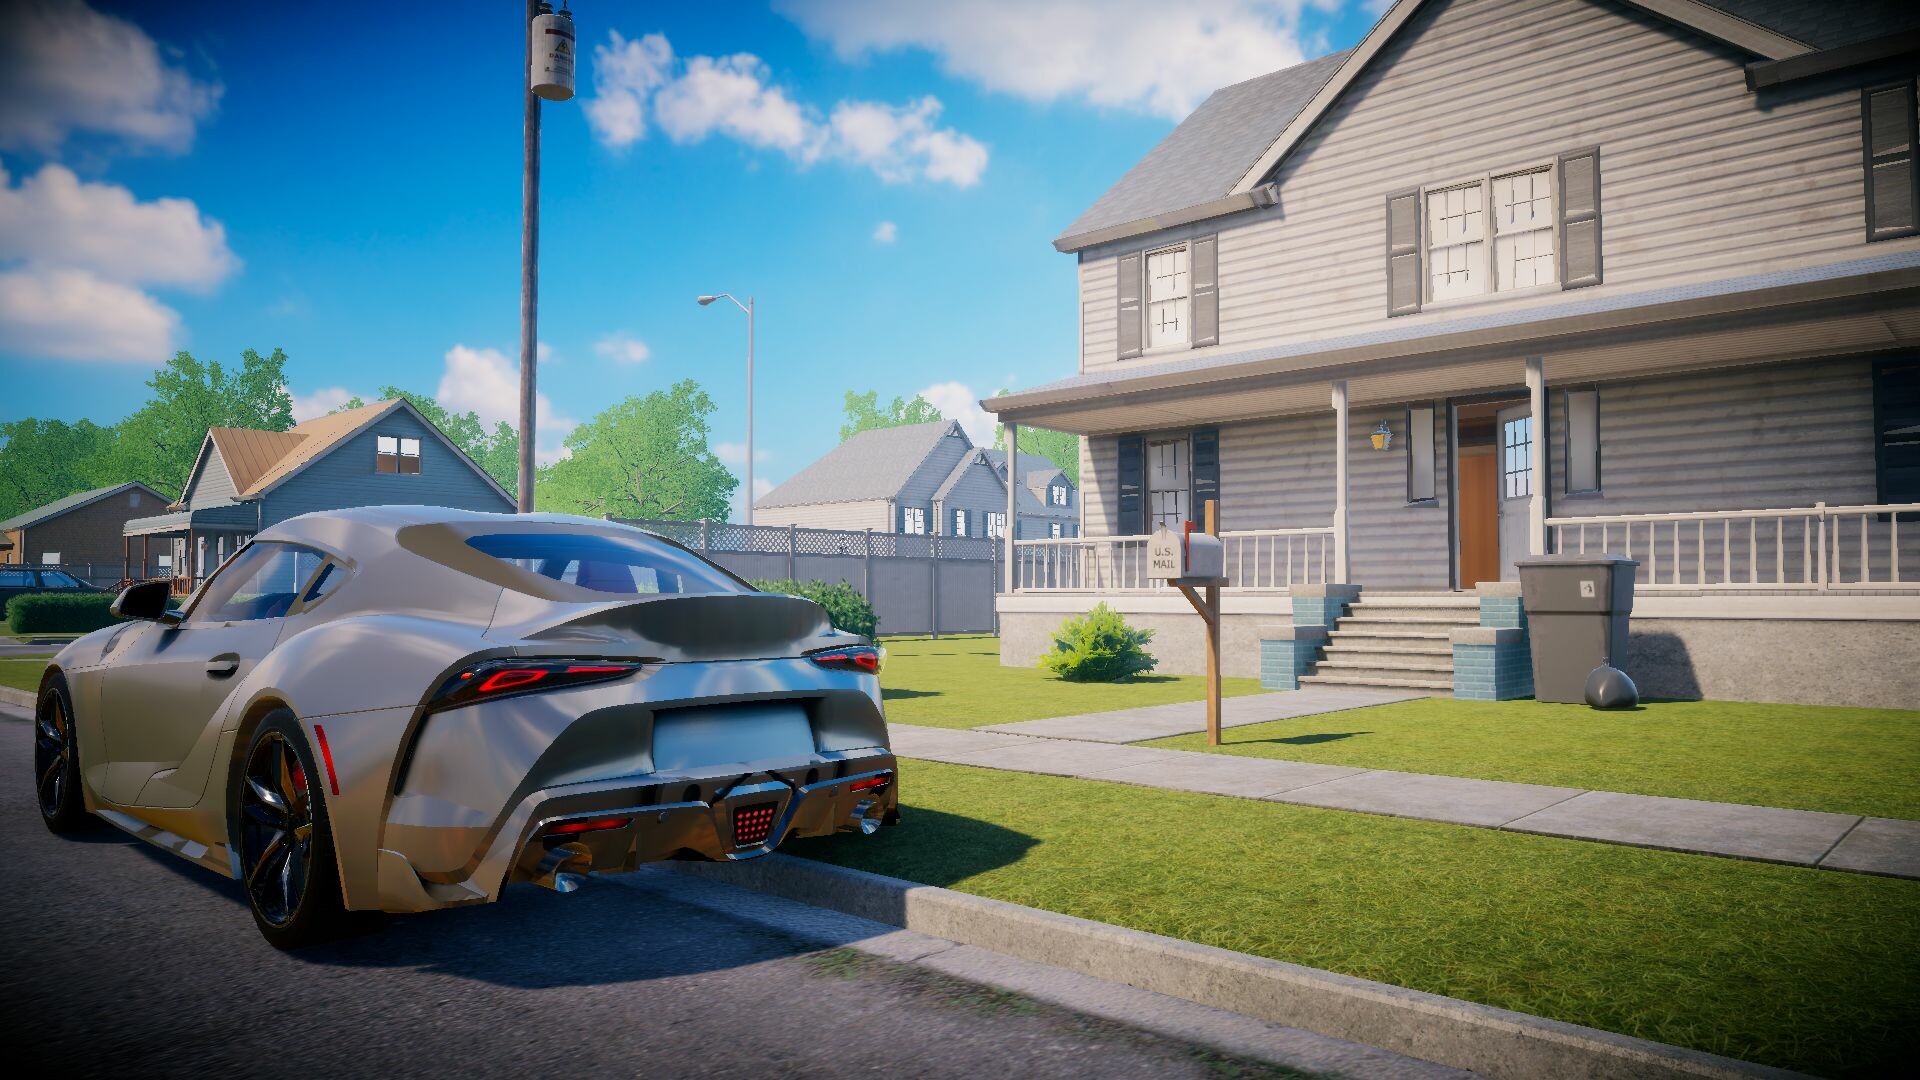 Compre e venda carros em Car For Sale Simulator 2023 no PC